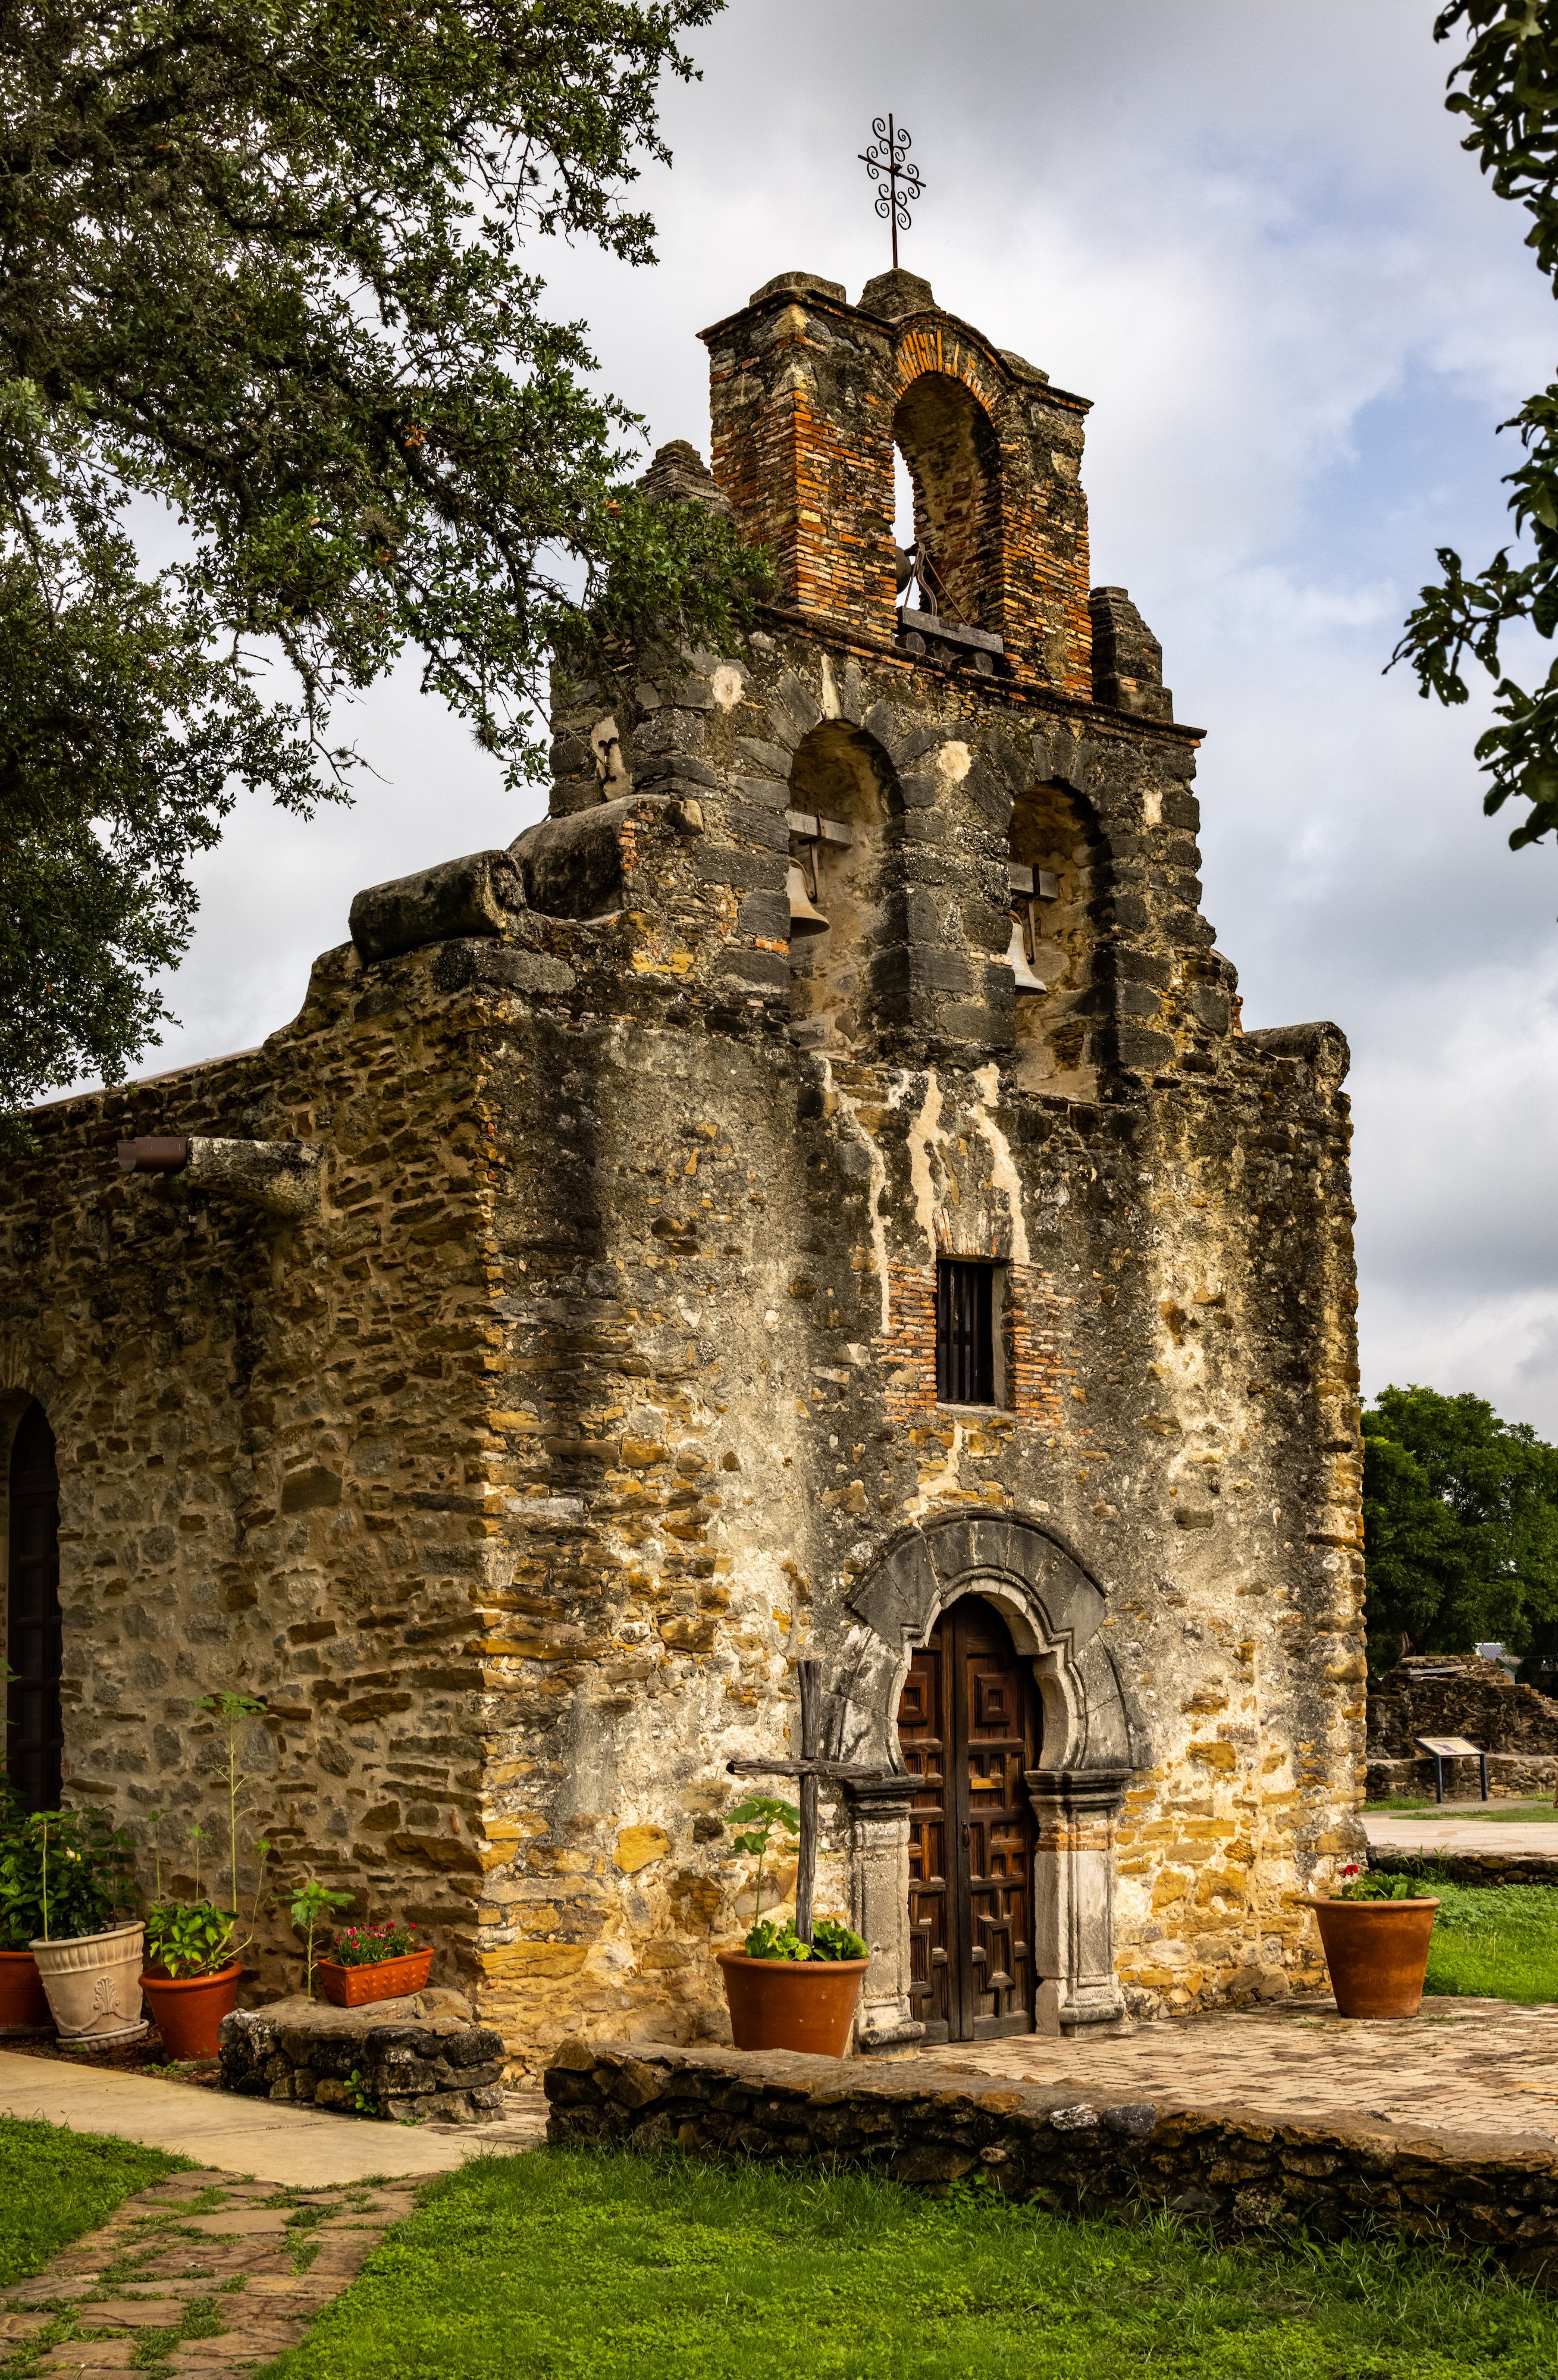 Mission Espada, San Antonio Texas